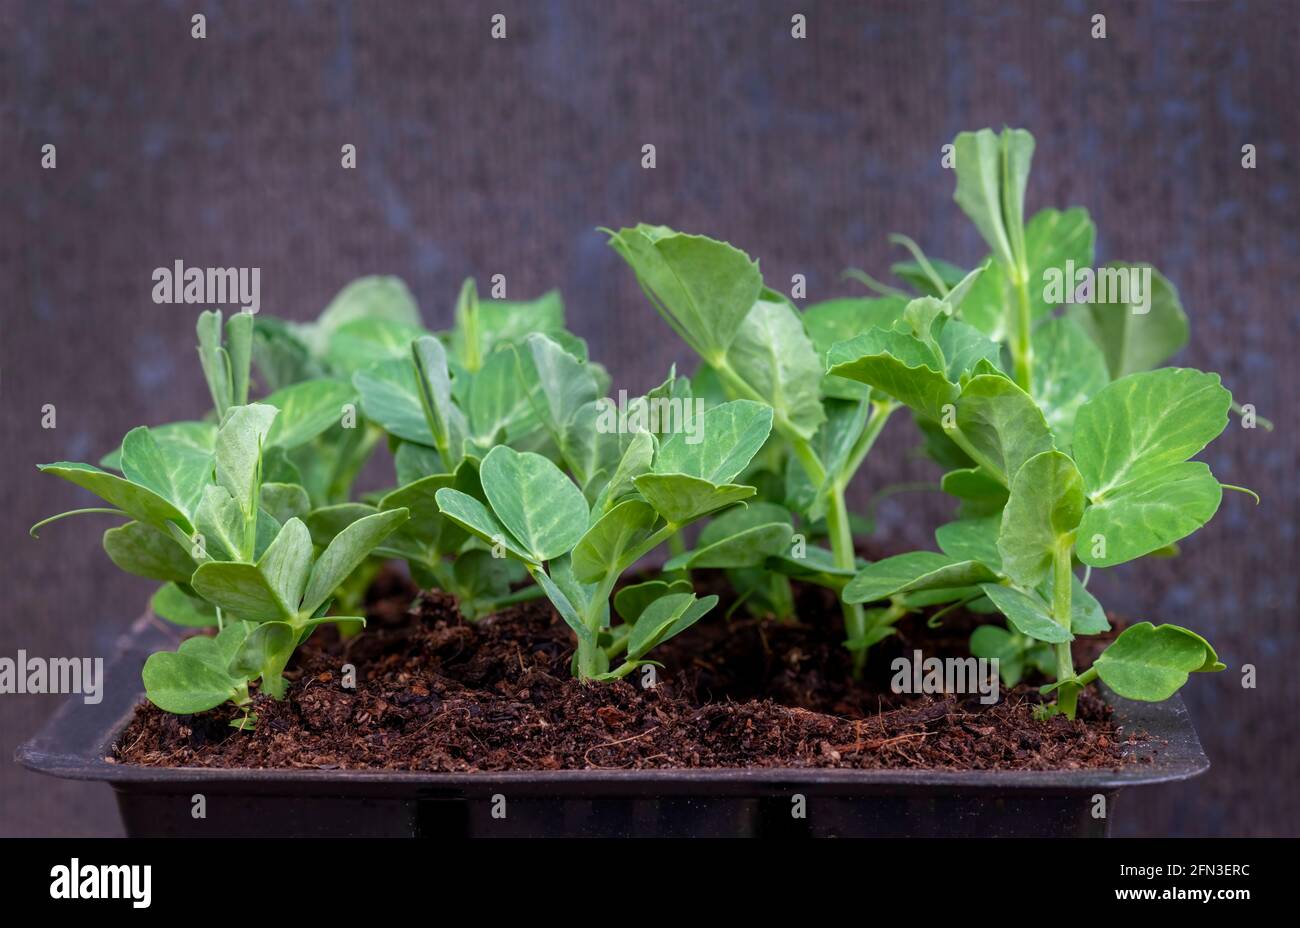 Junge Erbsensämlinge in einem Tablett bereit, auf gepflanzt werden, um ein Gitter in einem Garten oder Zuteilung zu Clime , defokussierte dunkle verschwommene Hintergrund Kopie Raum Stockfoto